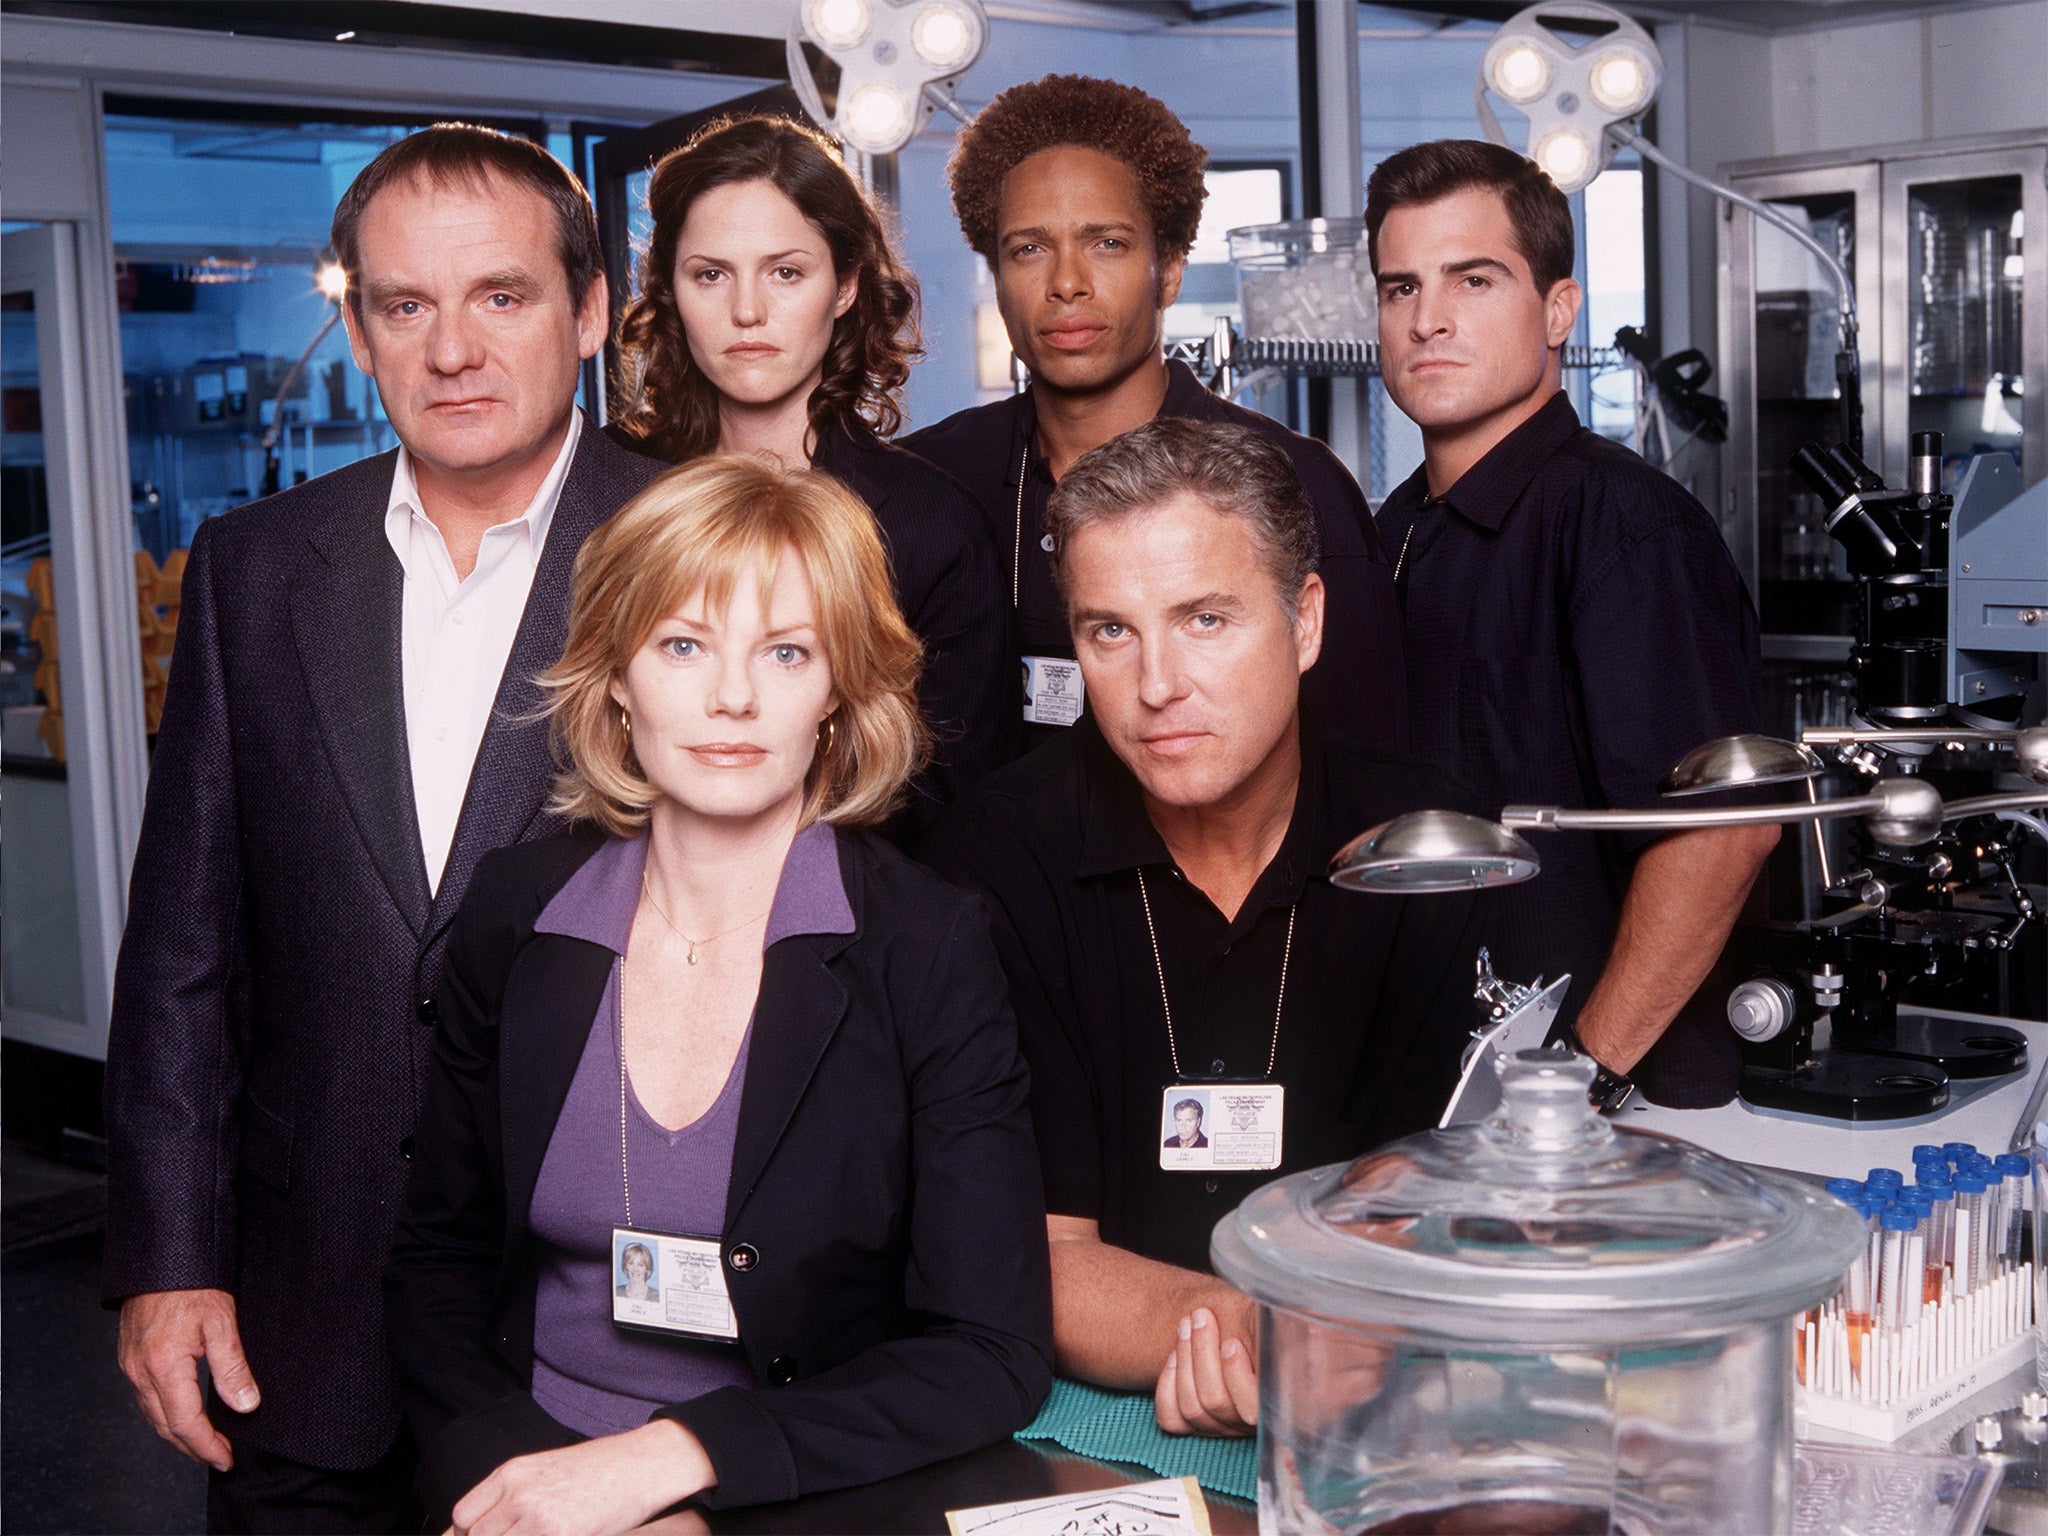 The original CSI show’s cast in 2001